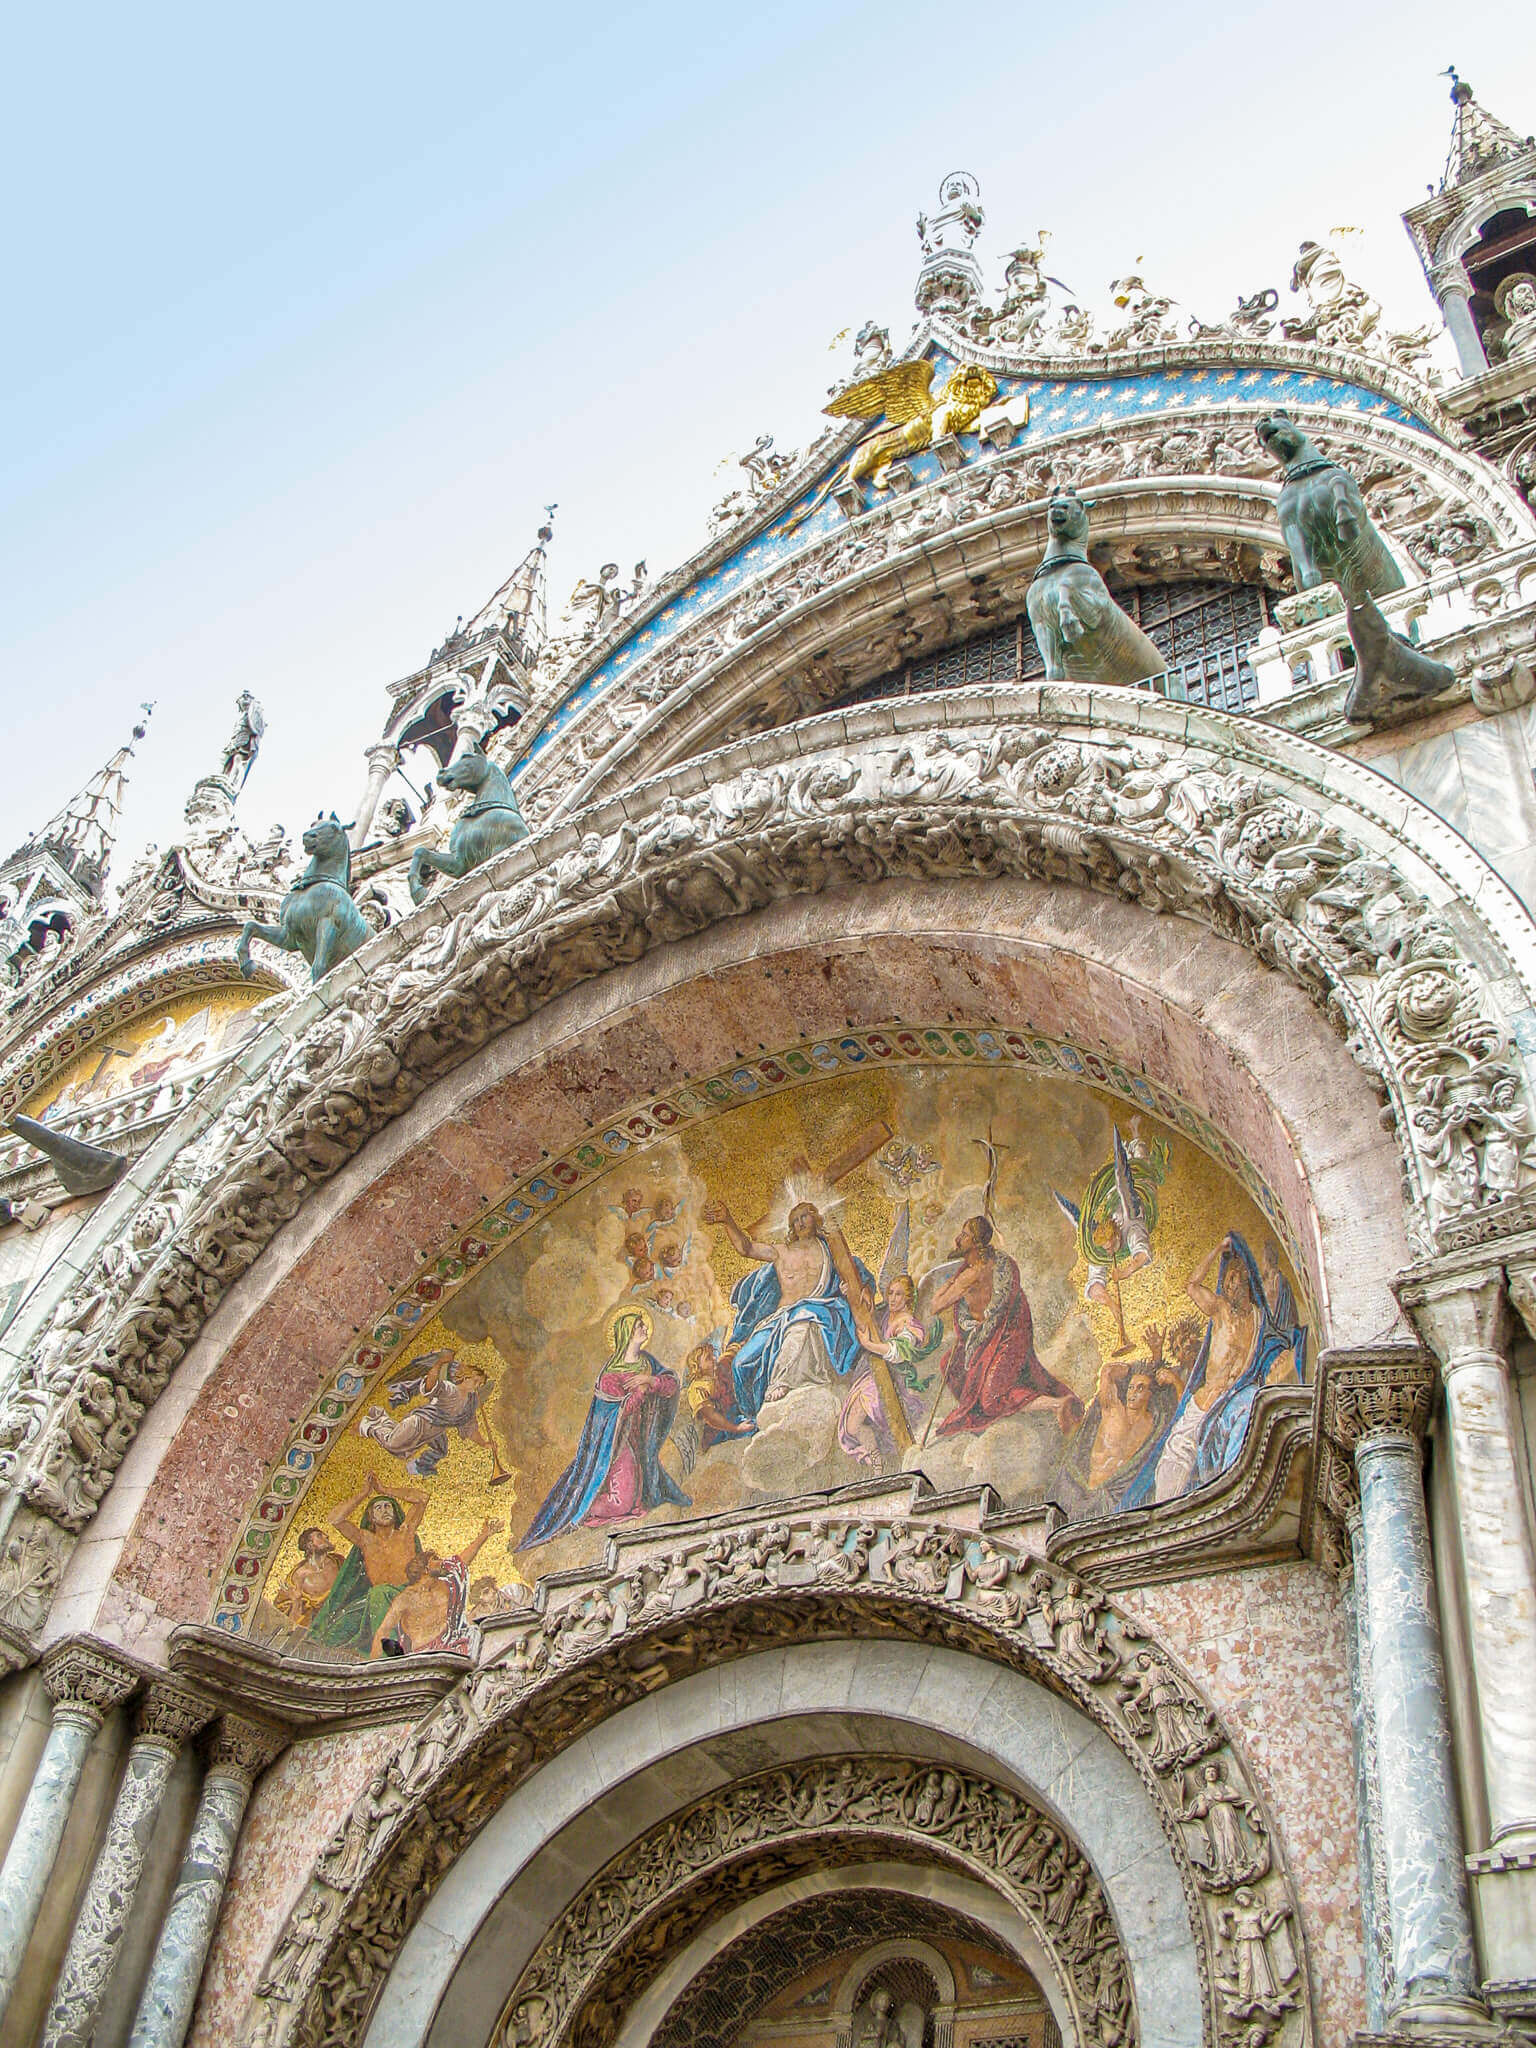 Detail of the San Marco basilica facade in Venice